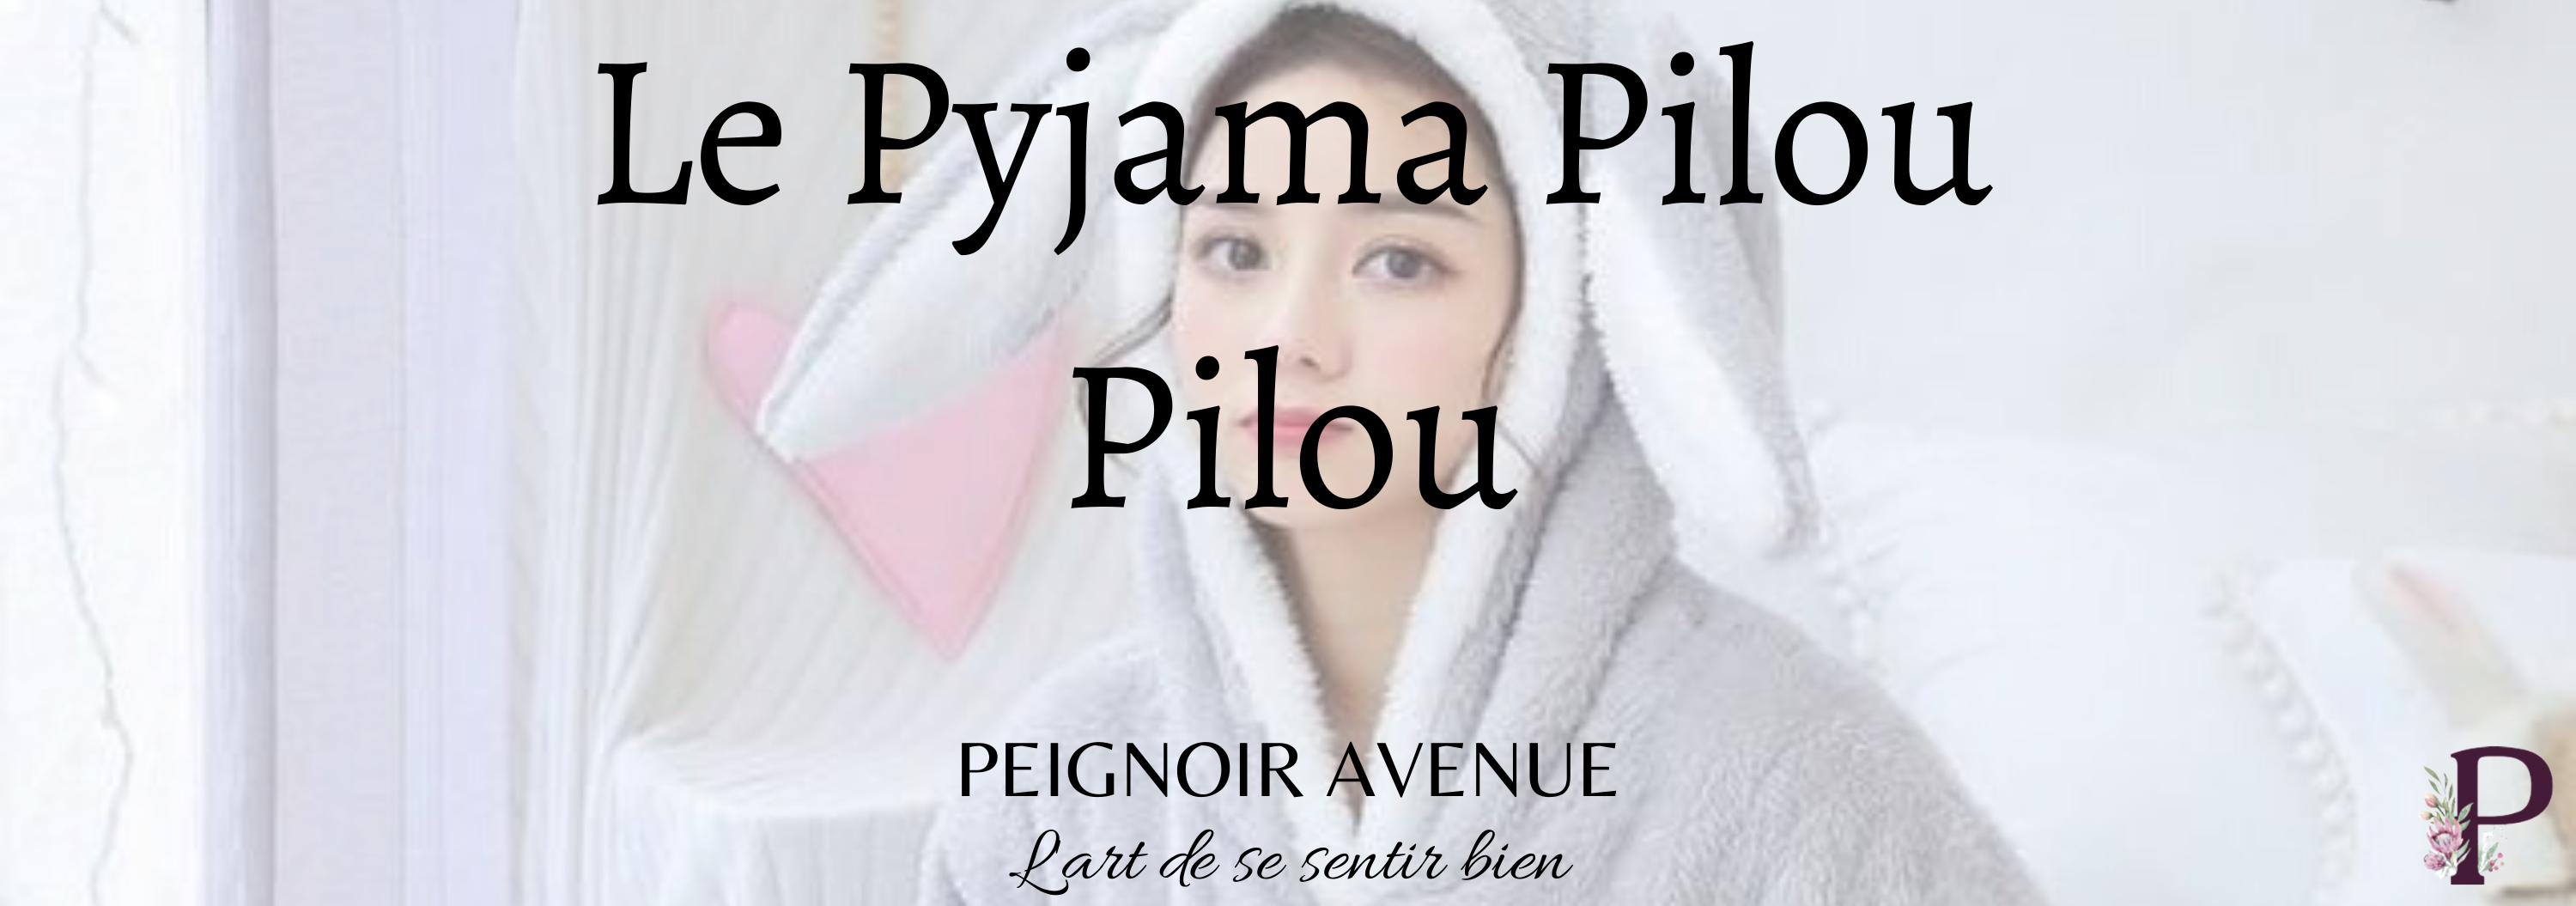 Peignoir Pilou Pilou Femme – Peignoir Avenue